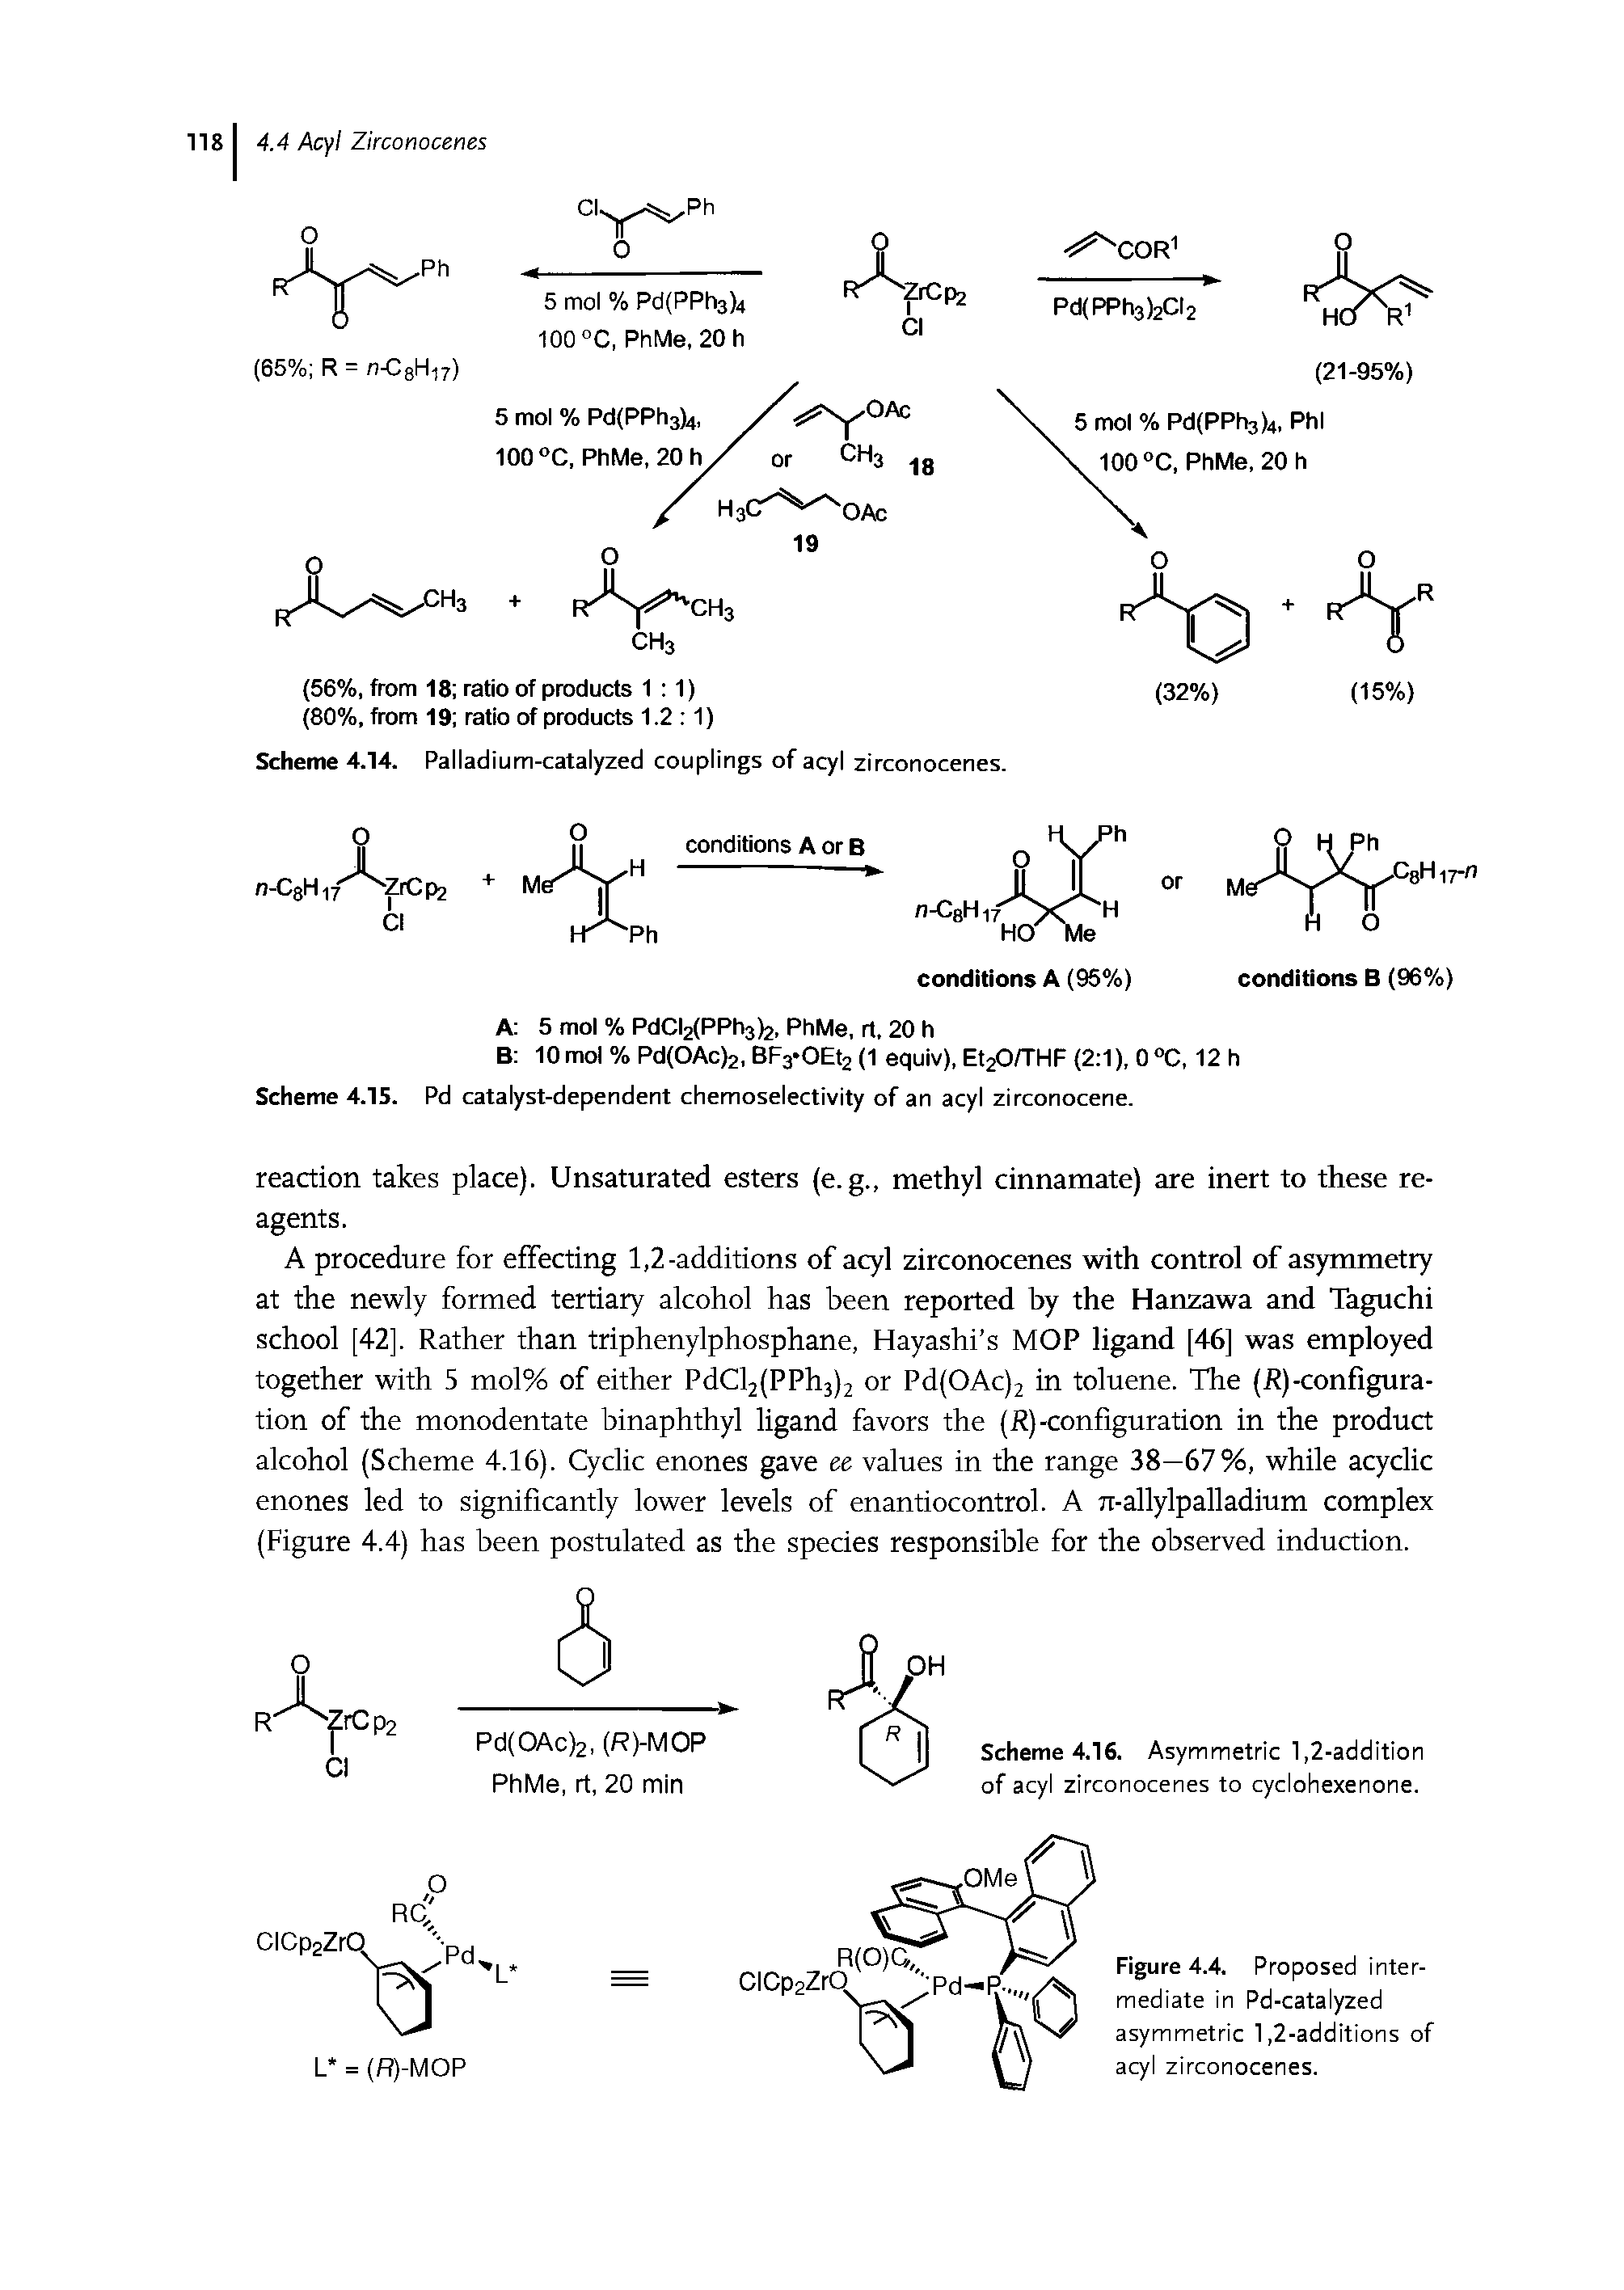 Scheme 4.16. Asymmetric 1,2-addition of acyl zirconocenes to cyclohexenone.